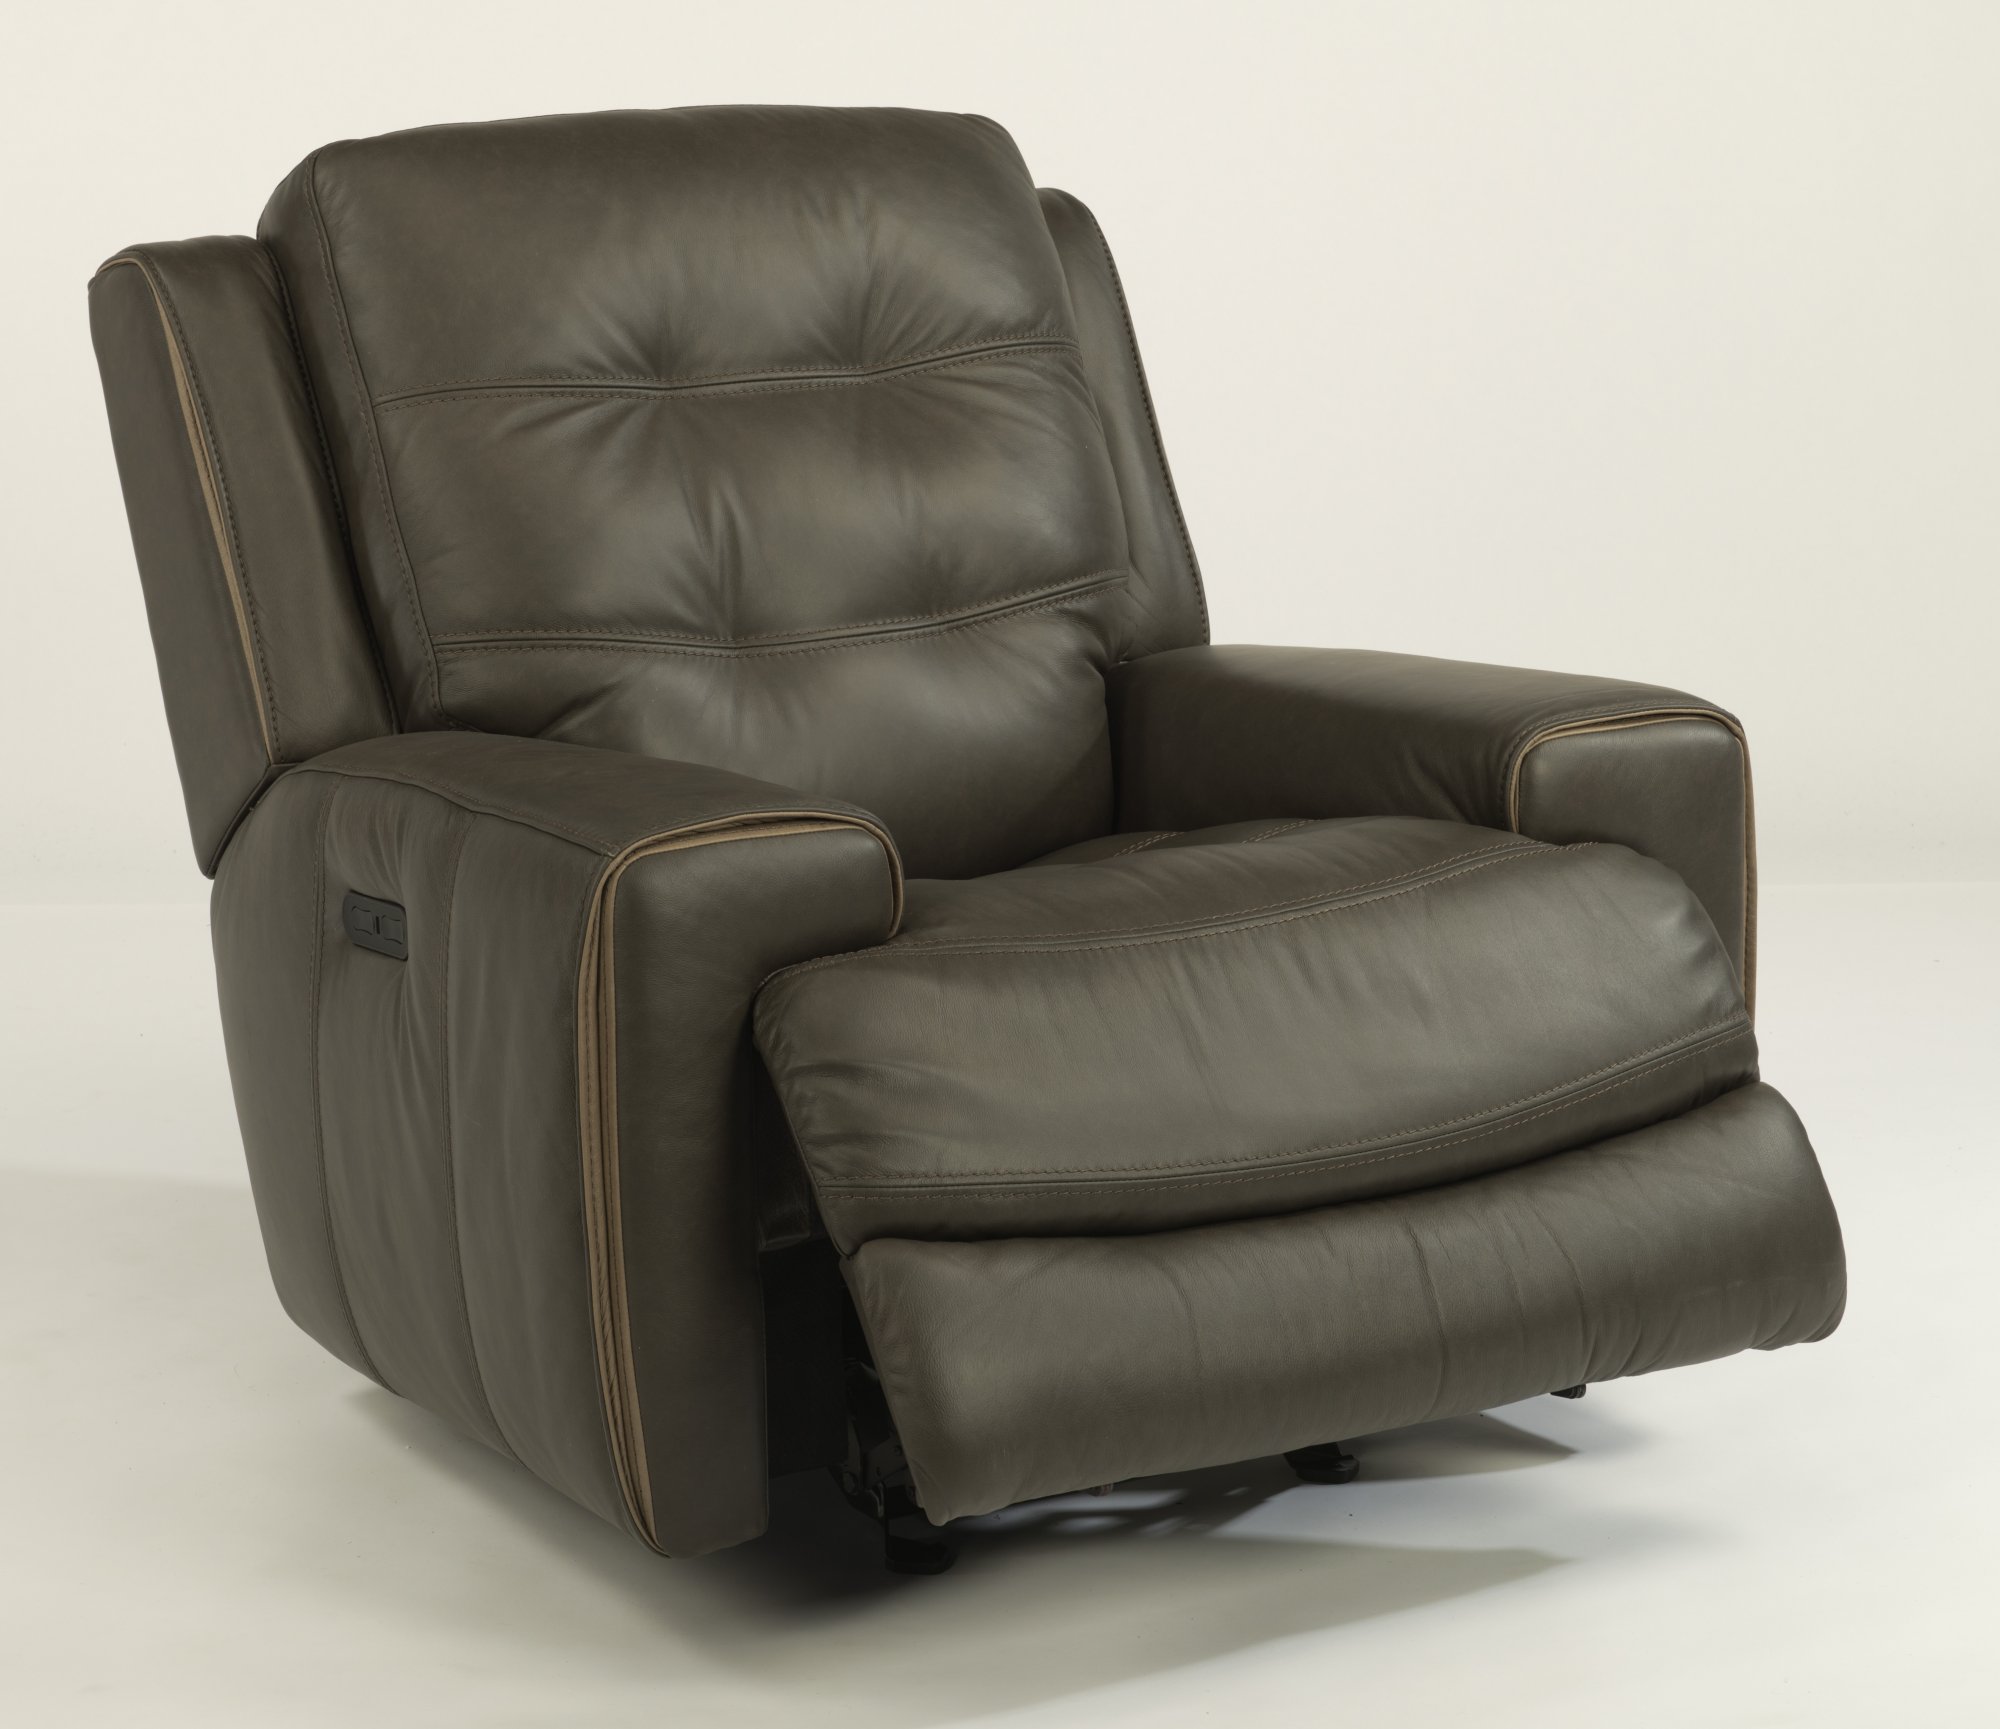 Dark brown leather recliner